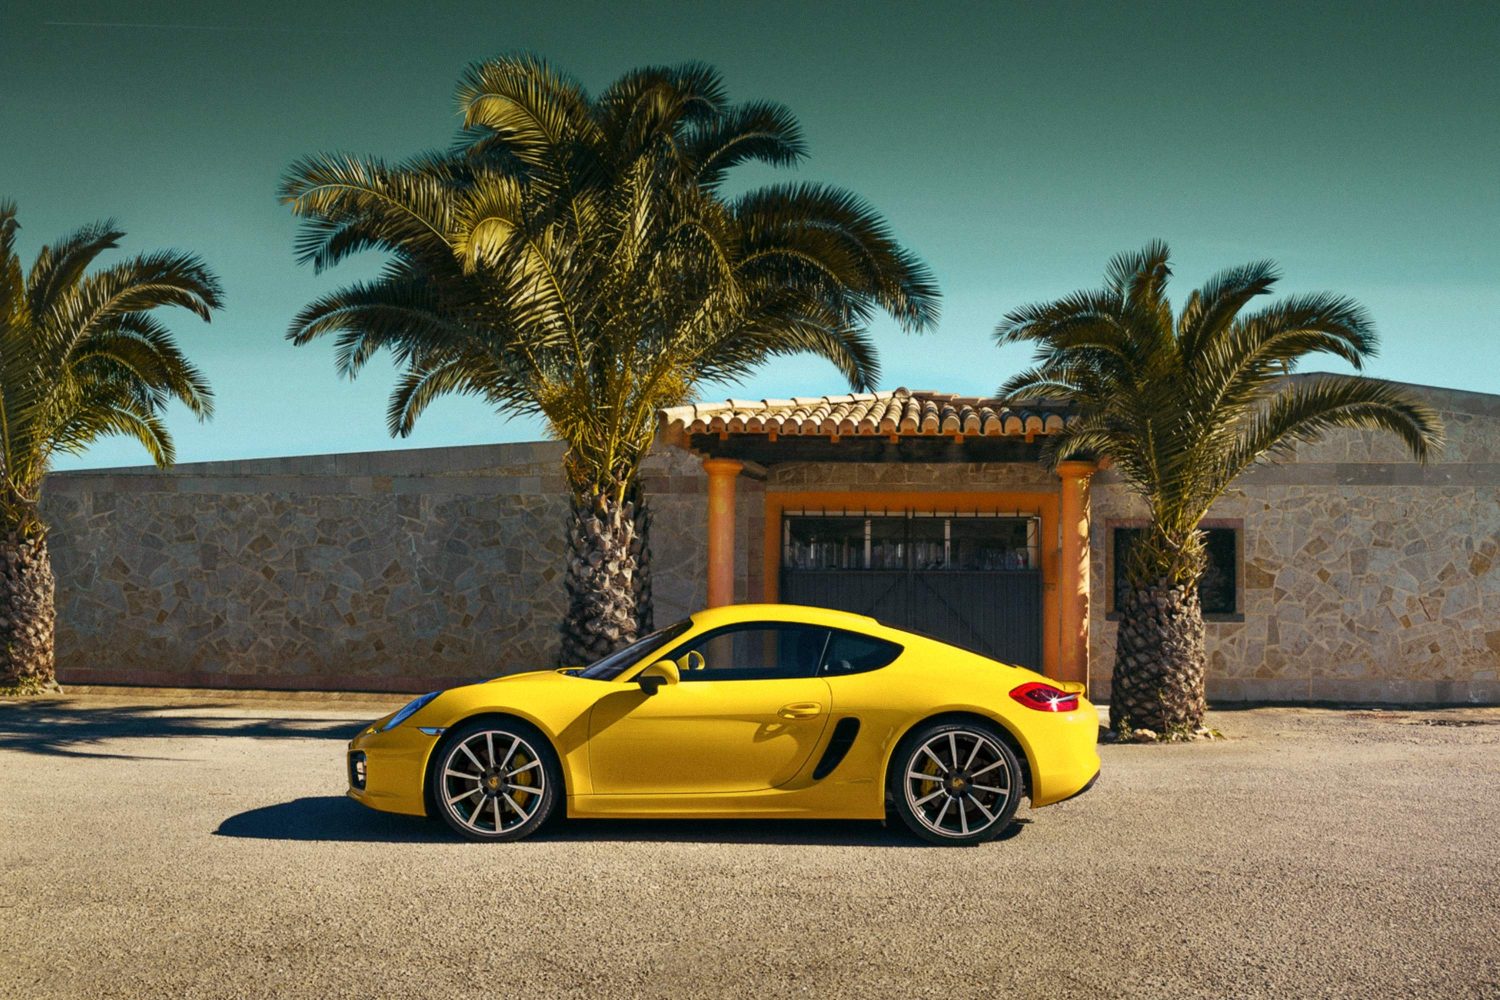 Gelber Porsche vor einem Haus mit Palmen